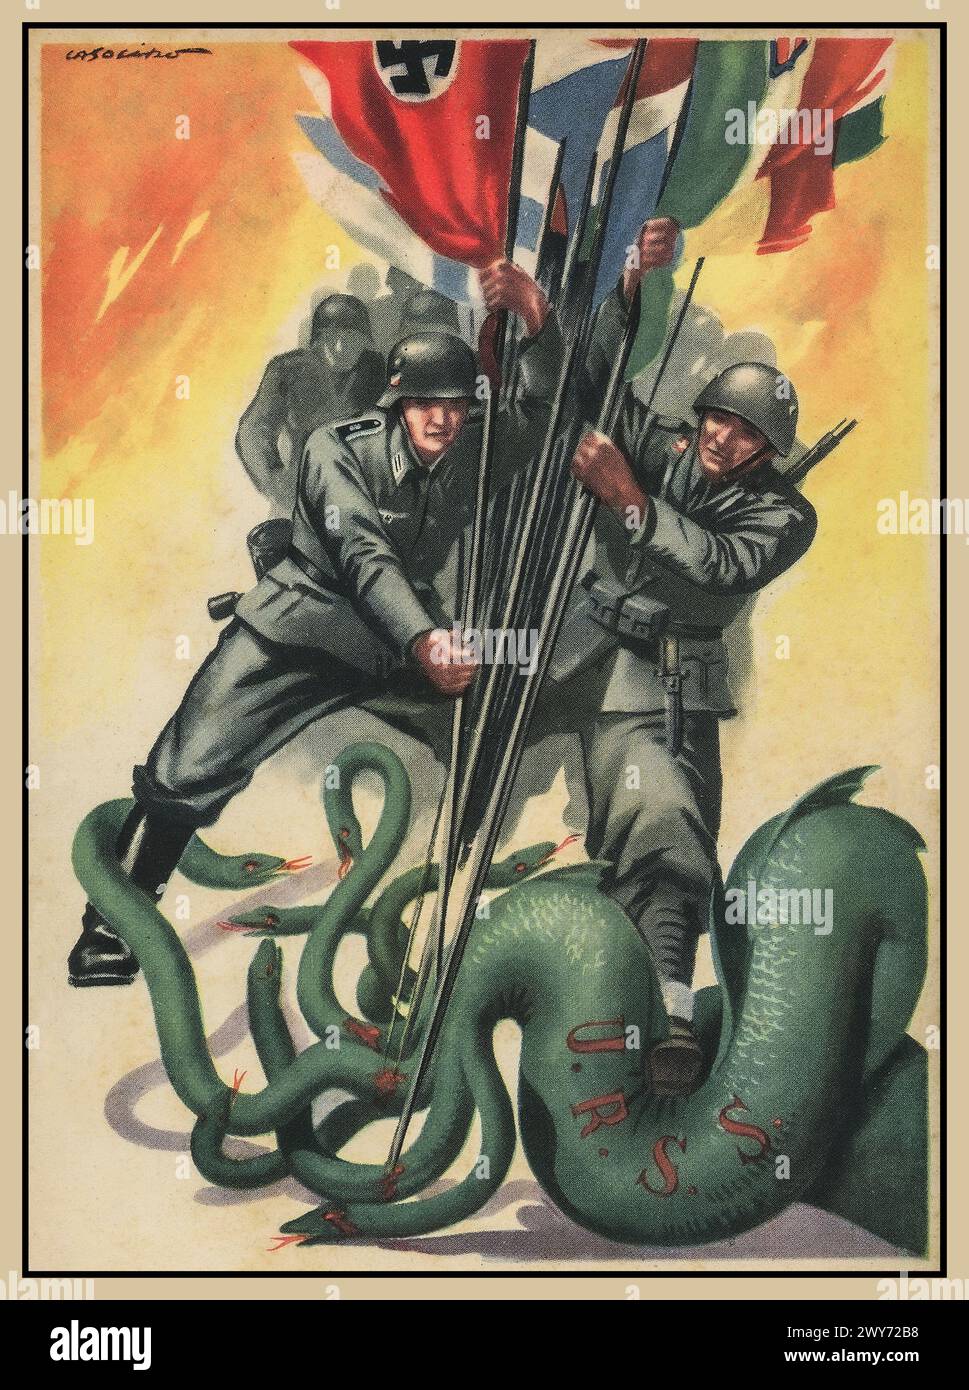 Manifesto di propaganda nazista / dell'asse della seconda guerra mondiale con la Wehrmacht Germania nazista e soldati dell'asse, combattendo un serpente verde dell'URSS, tenendo varie bandiere dei paesi dell'asse, tra cui la Swastika. Seconda guerra mondiale seconda guerra mondiale anni '1940 Foto Stock